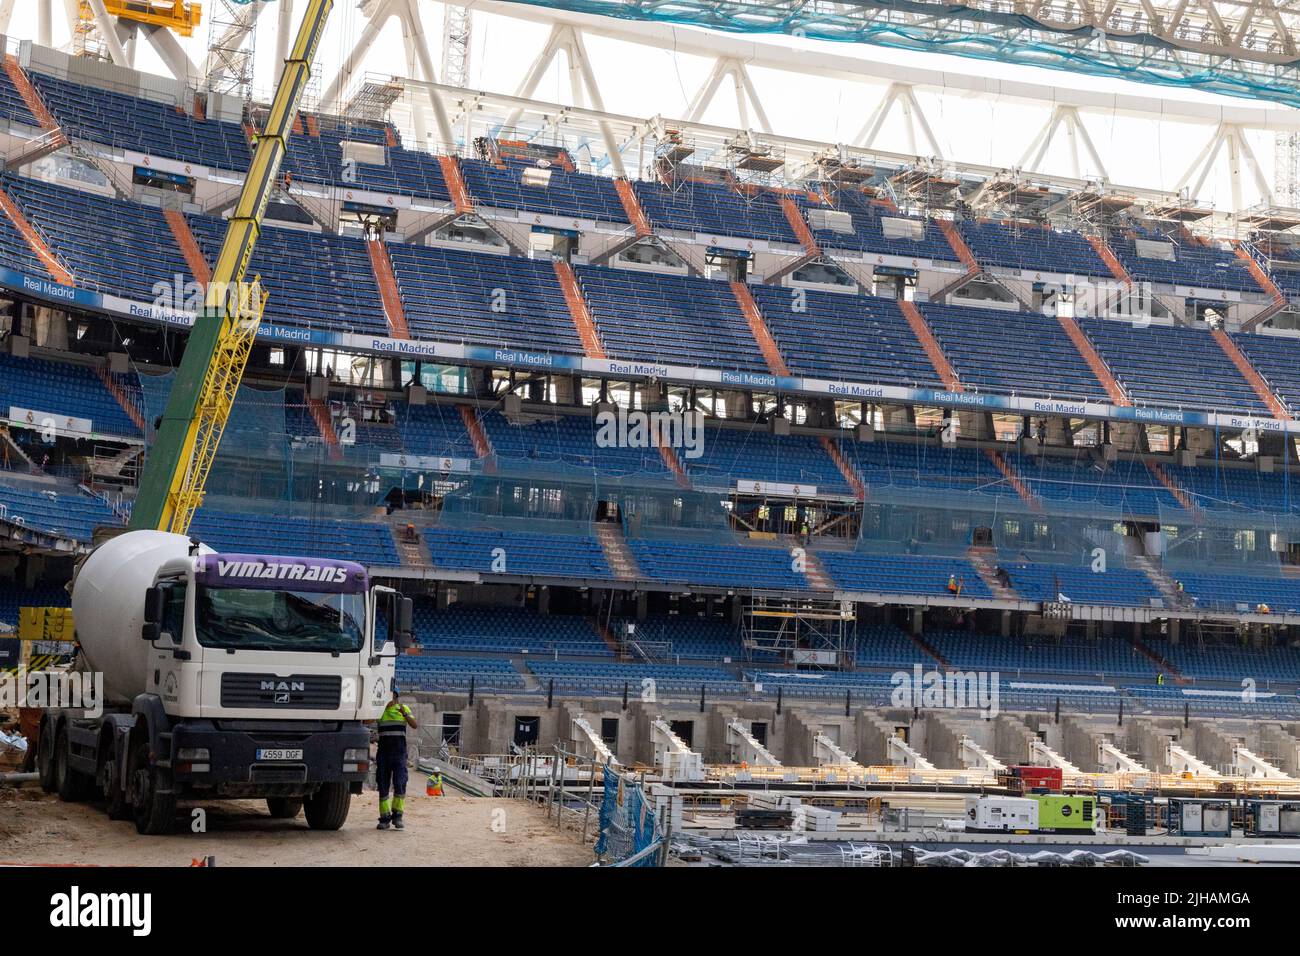 Santiago Bernabeu. Stadion. Das Innere des Santiago Bernabu Stadions mit dem Bauprozess für die komplette Renovierung des Real Madrid C.F. Stockfoto